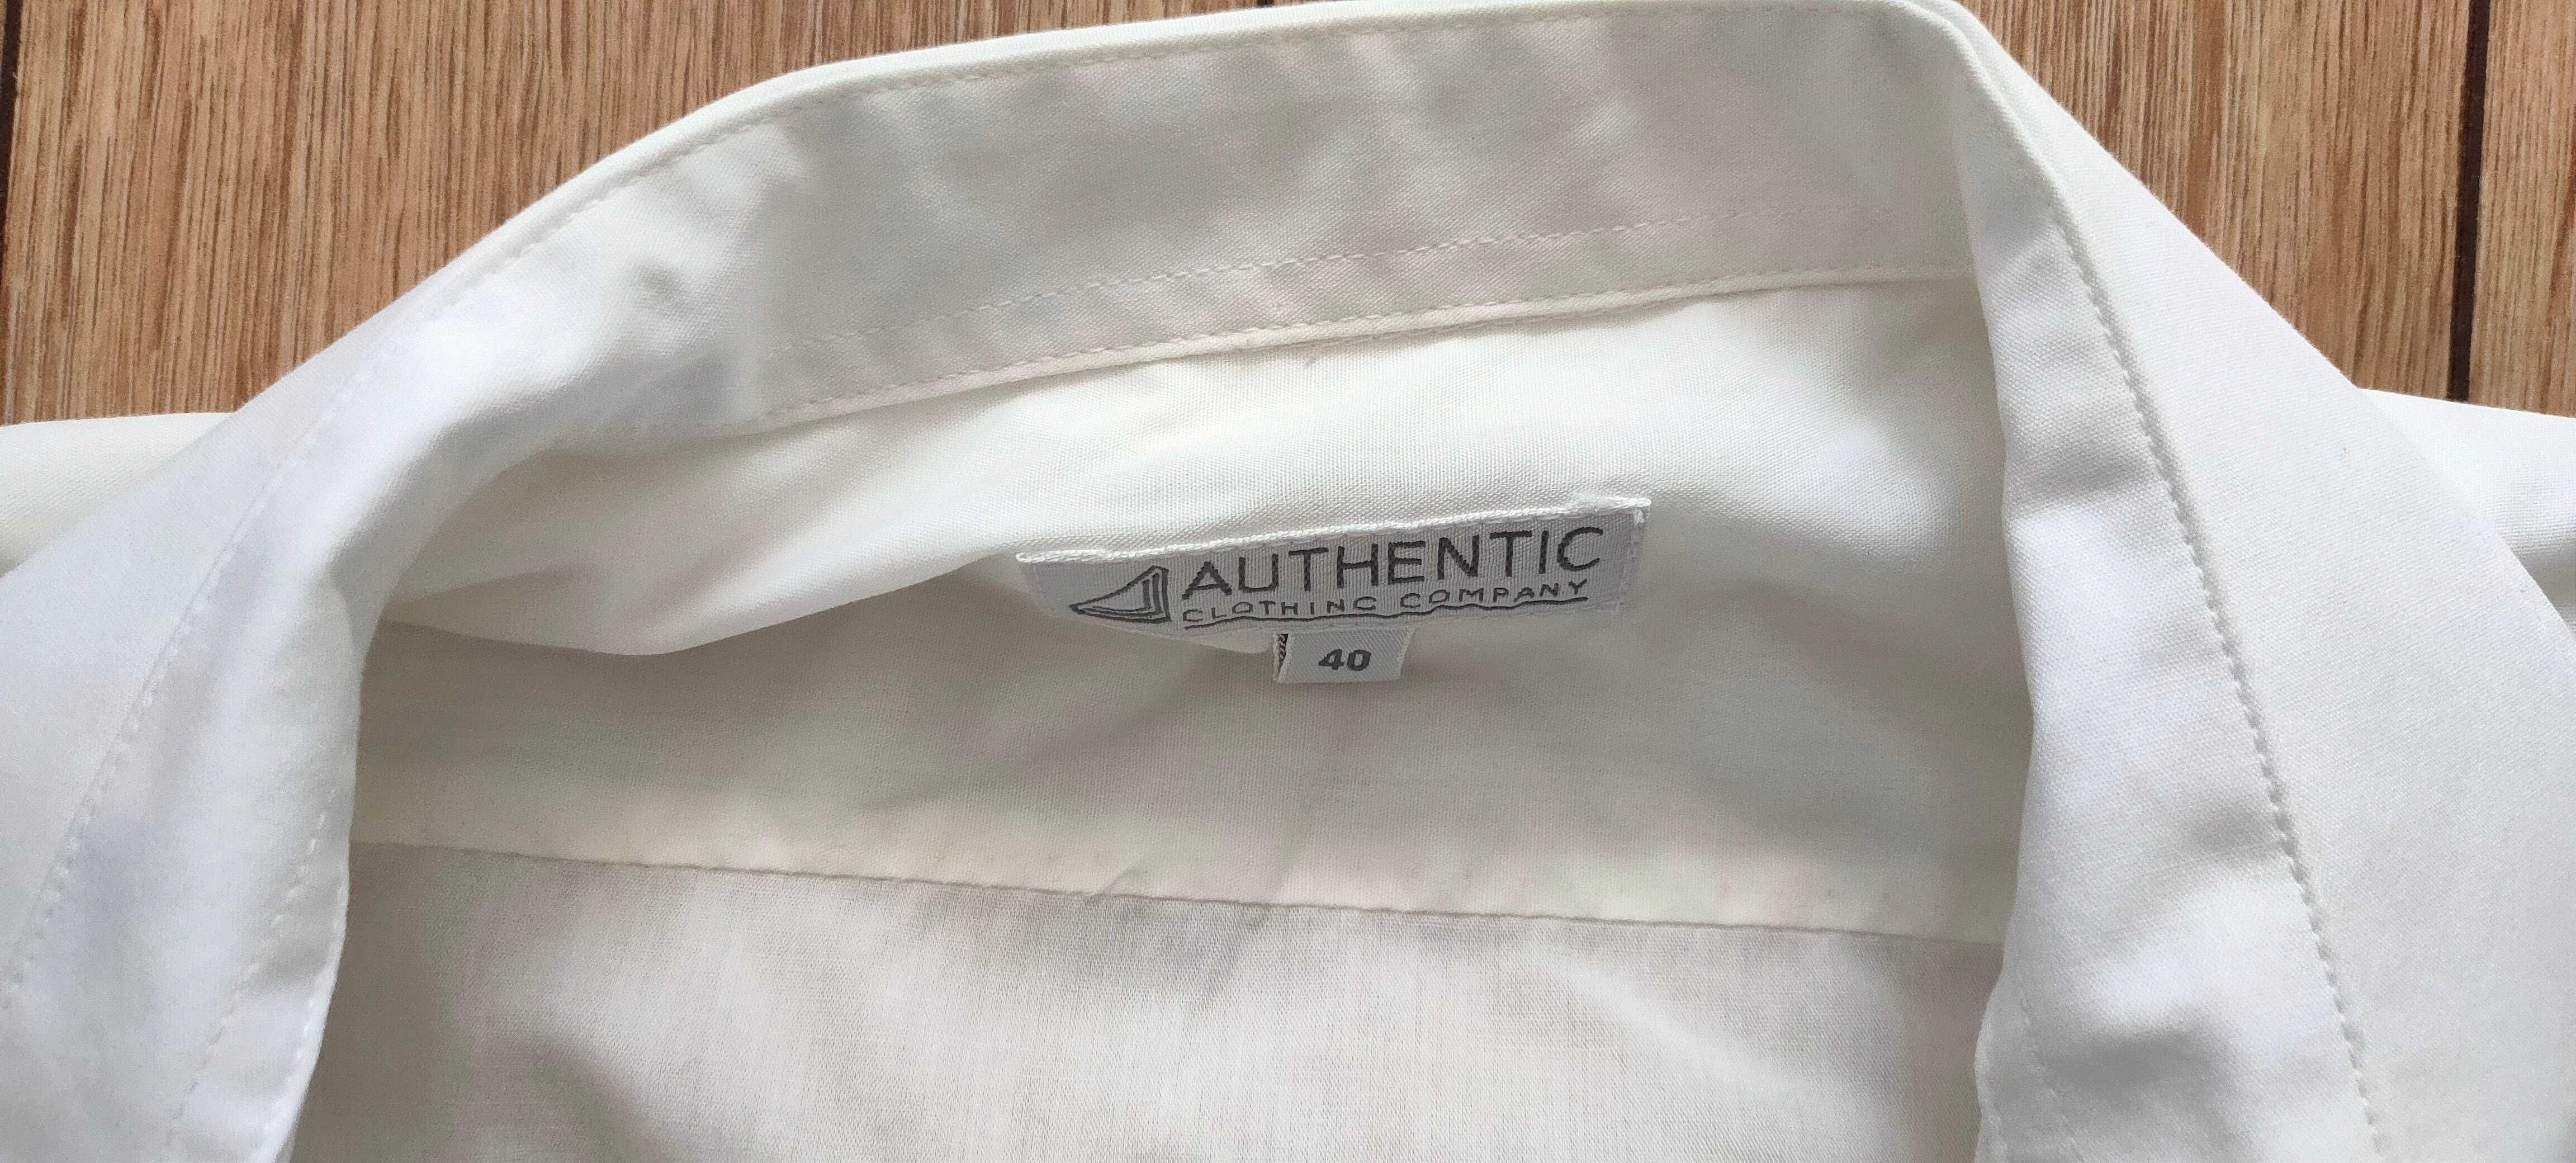 Koszula biała z krótkim rękawkiem, Authentic, r. 40